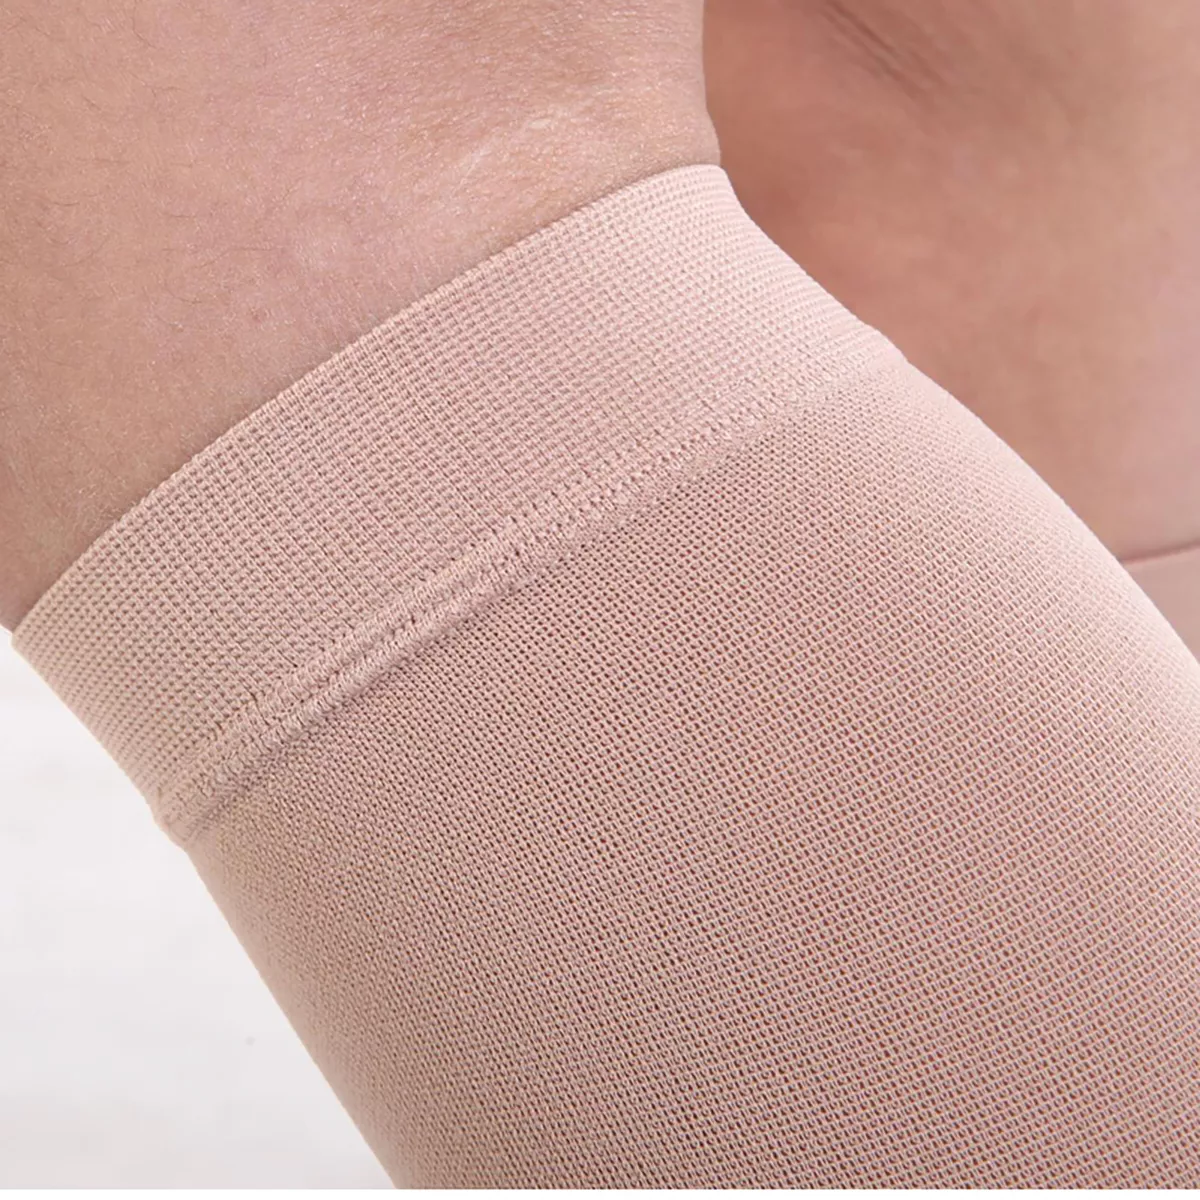 Varcoh ® 30-40 mmHg Men Knee High Closed Toe Compression Socks Beige